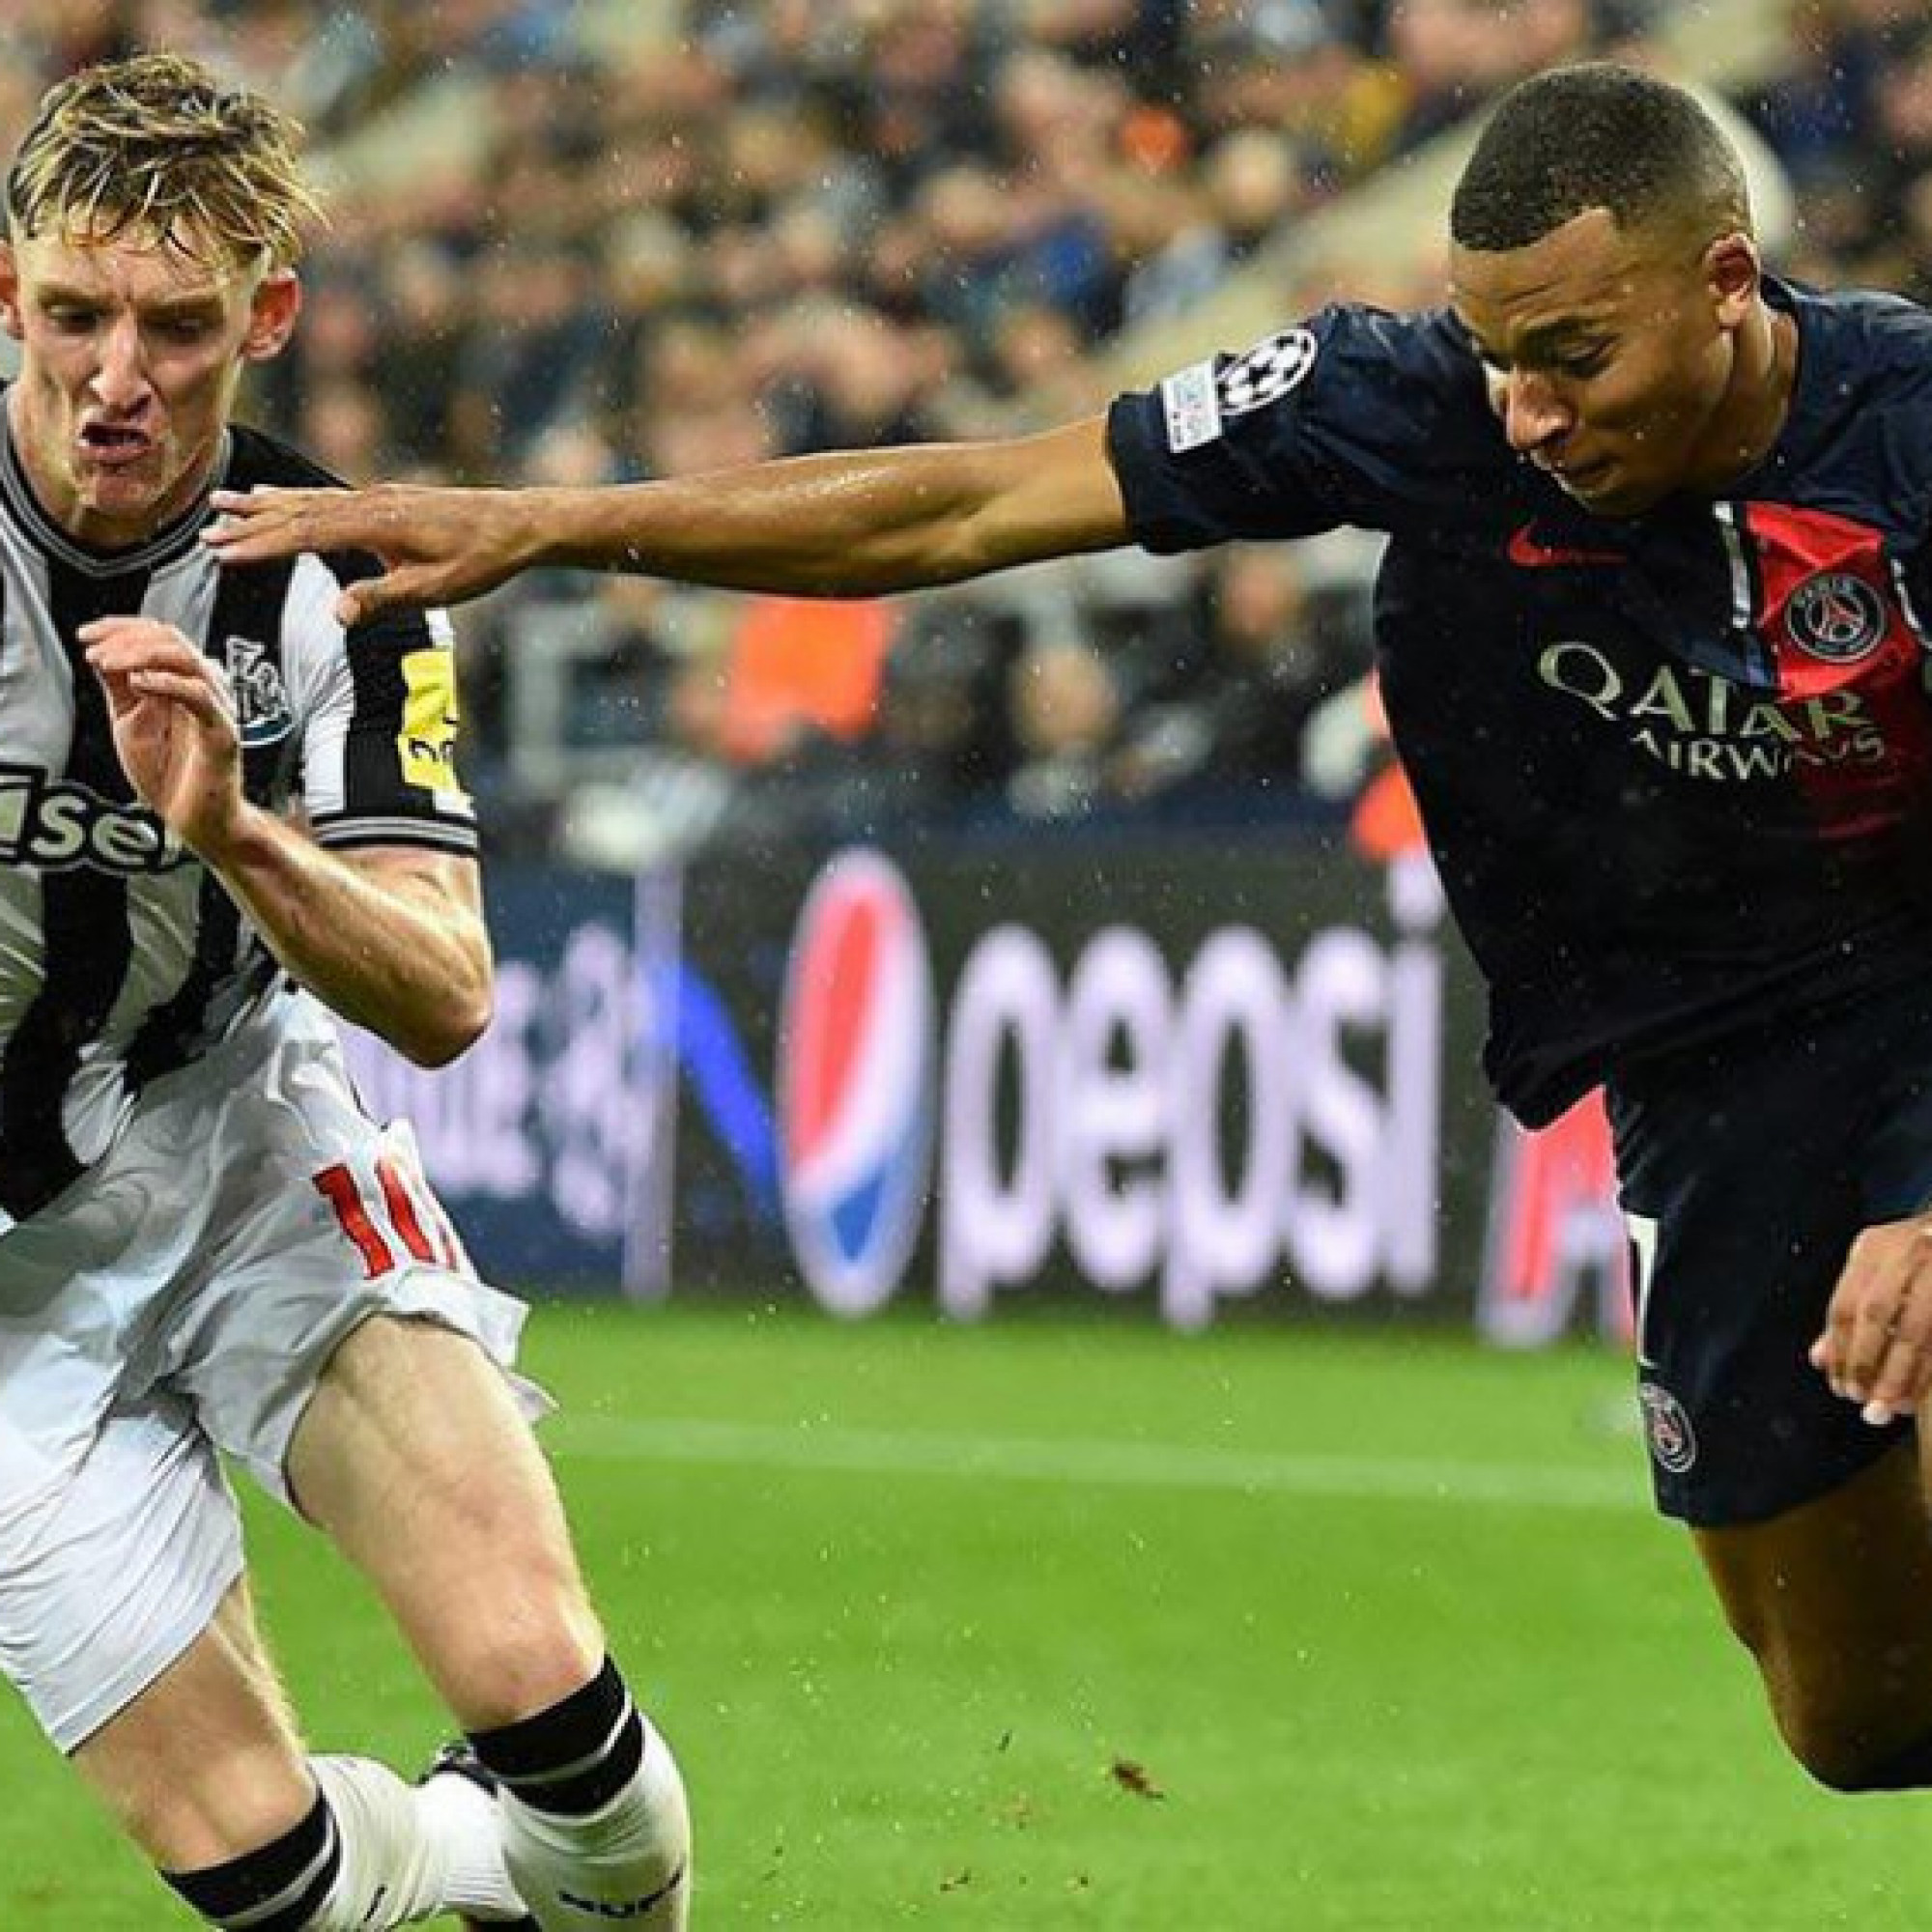  - Nhận định trận HOT Cúp C1: PSG mưu phục thù Newcastle, Barca - Porto quyết chiến tranh vé